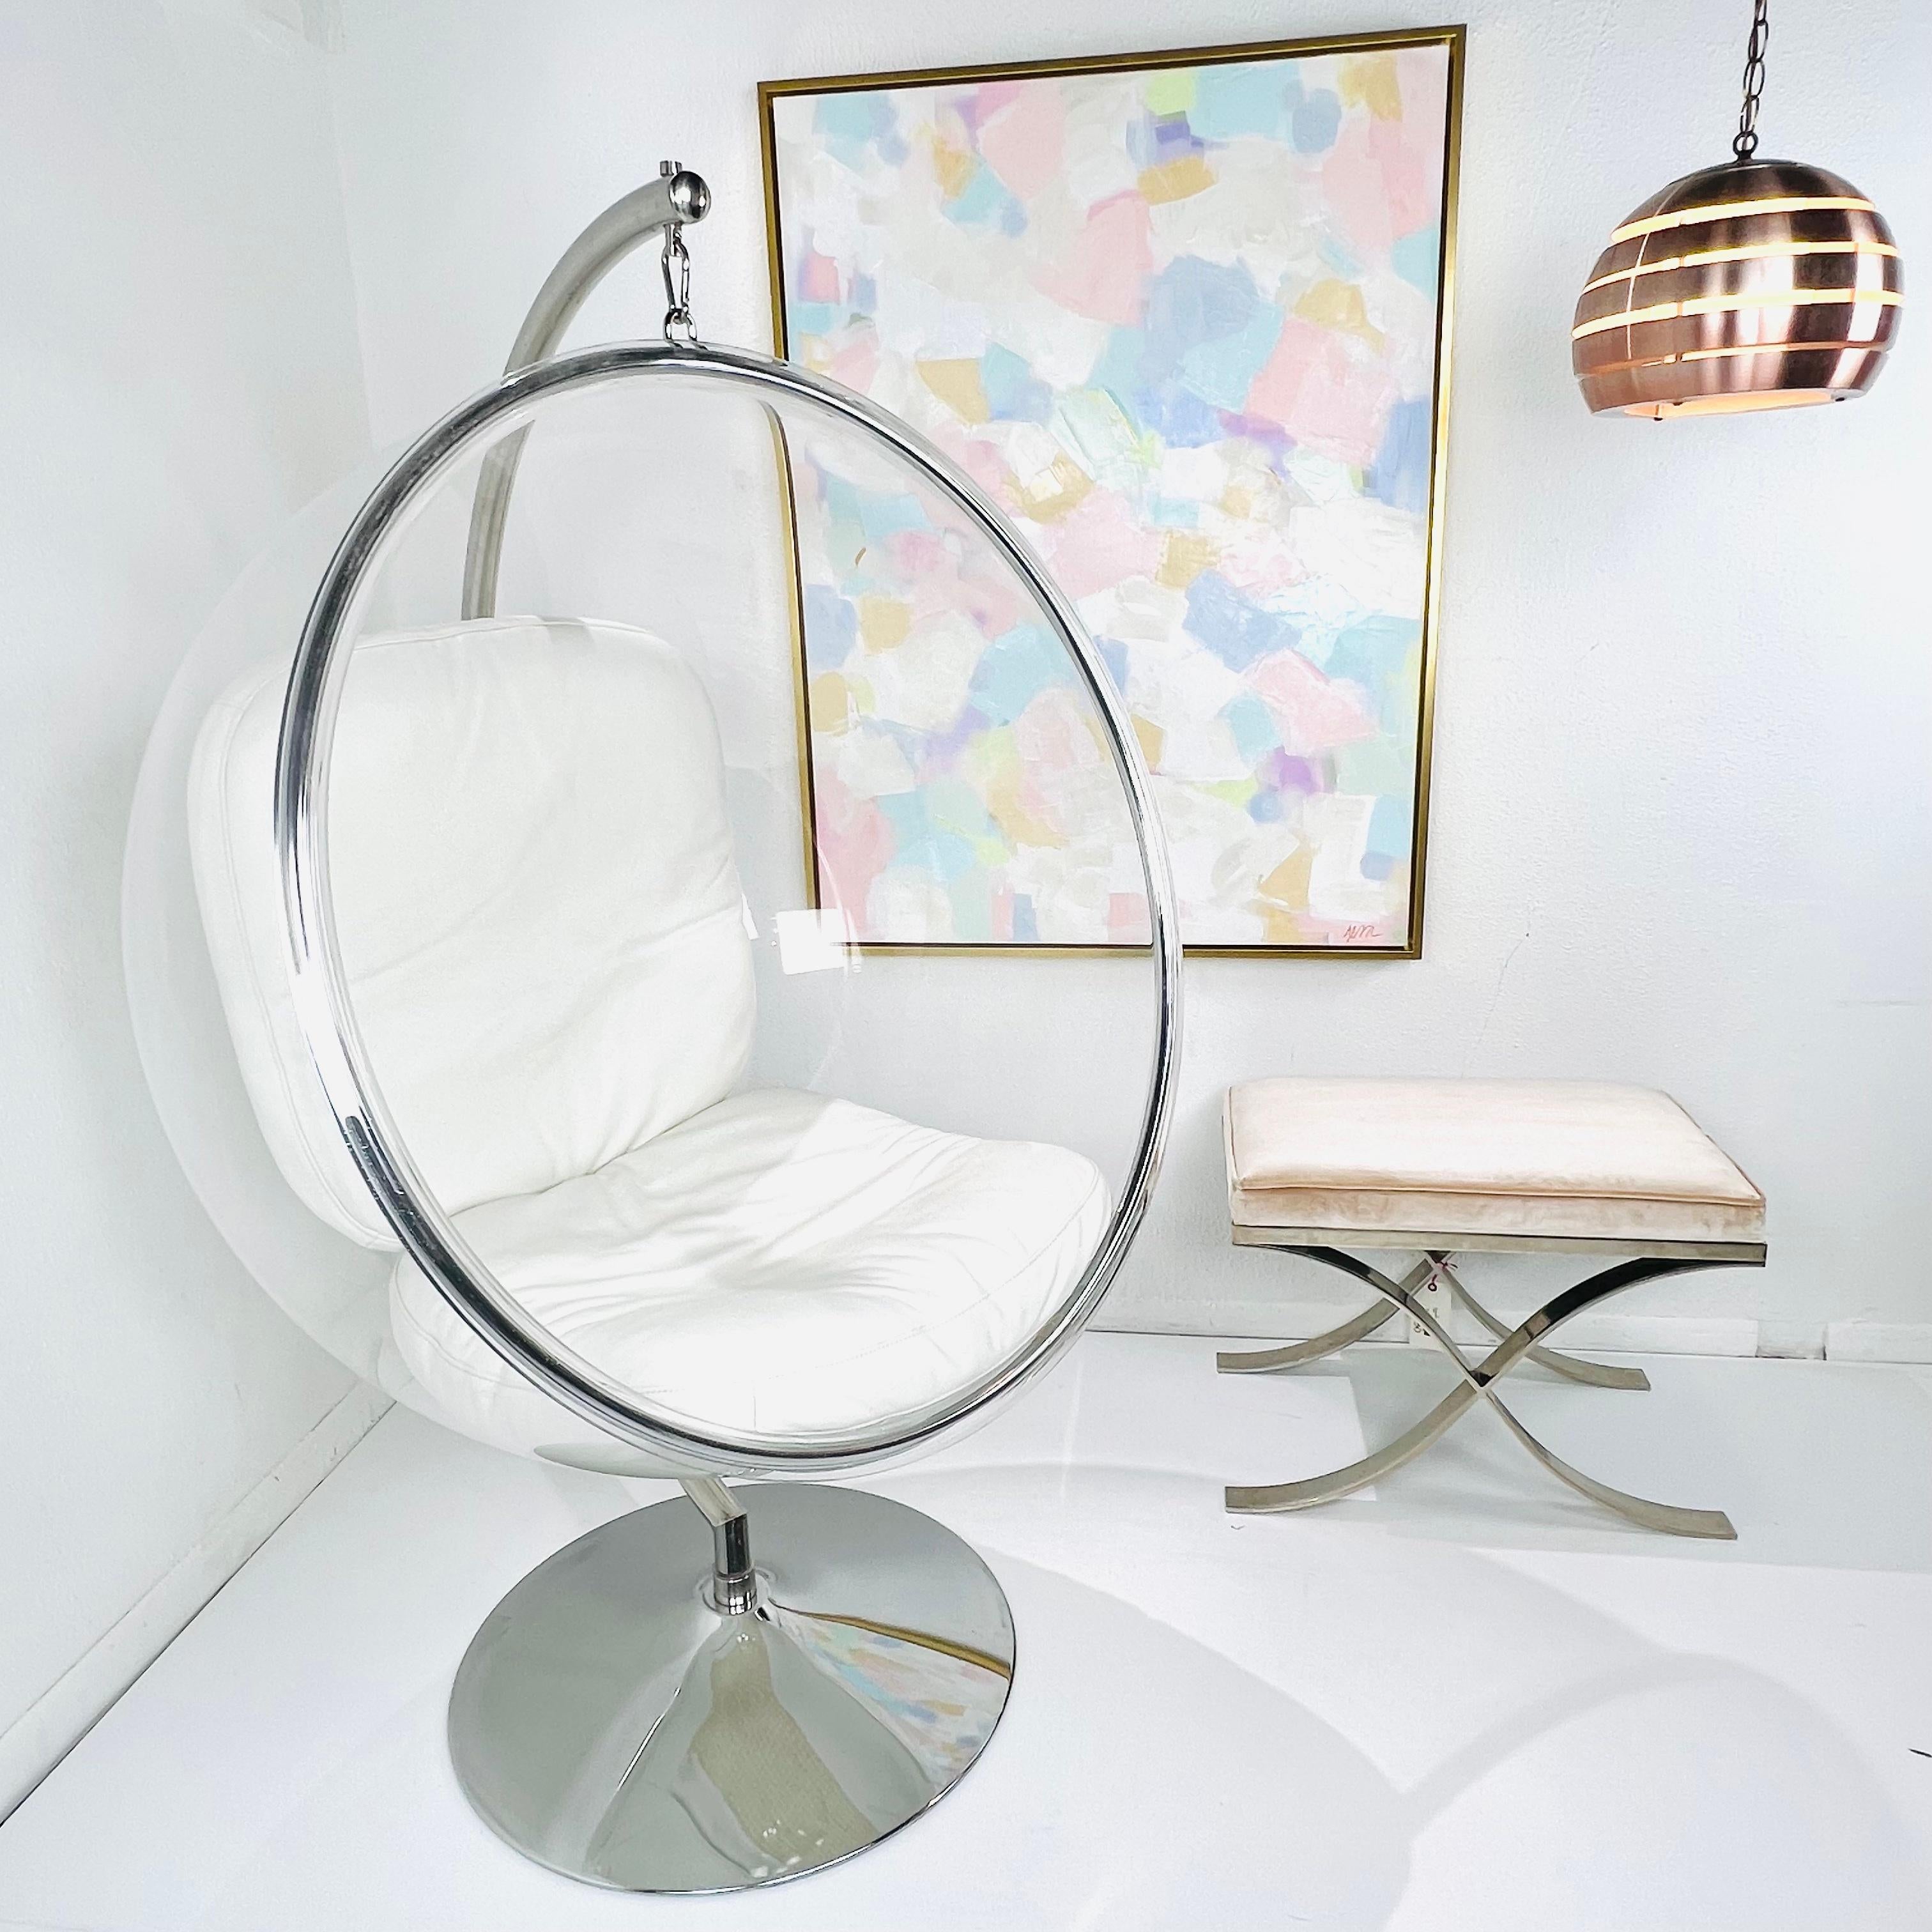 Eero Aarnio a conçu la chaise Bubble originale en 1968, alors qu'il résidait en Finlande. Le design industriel moderniste de la chaise permet une expérience d'assise à la fois encapsulante et transparente. La sensation de flottement est obtenue en